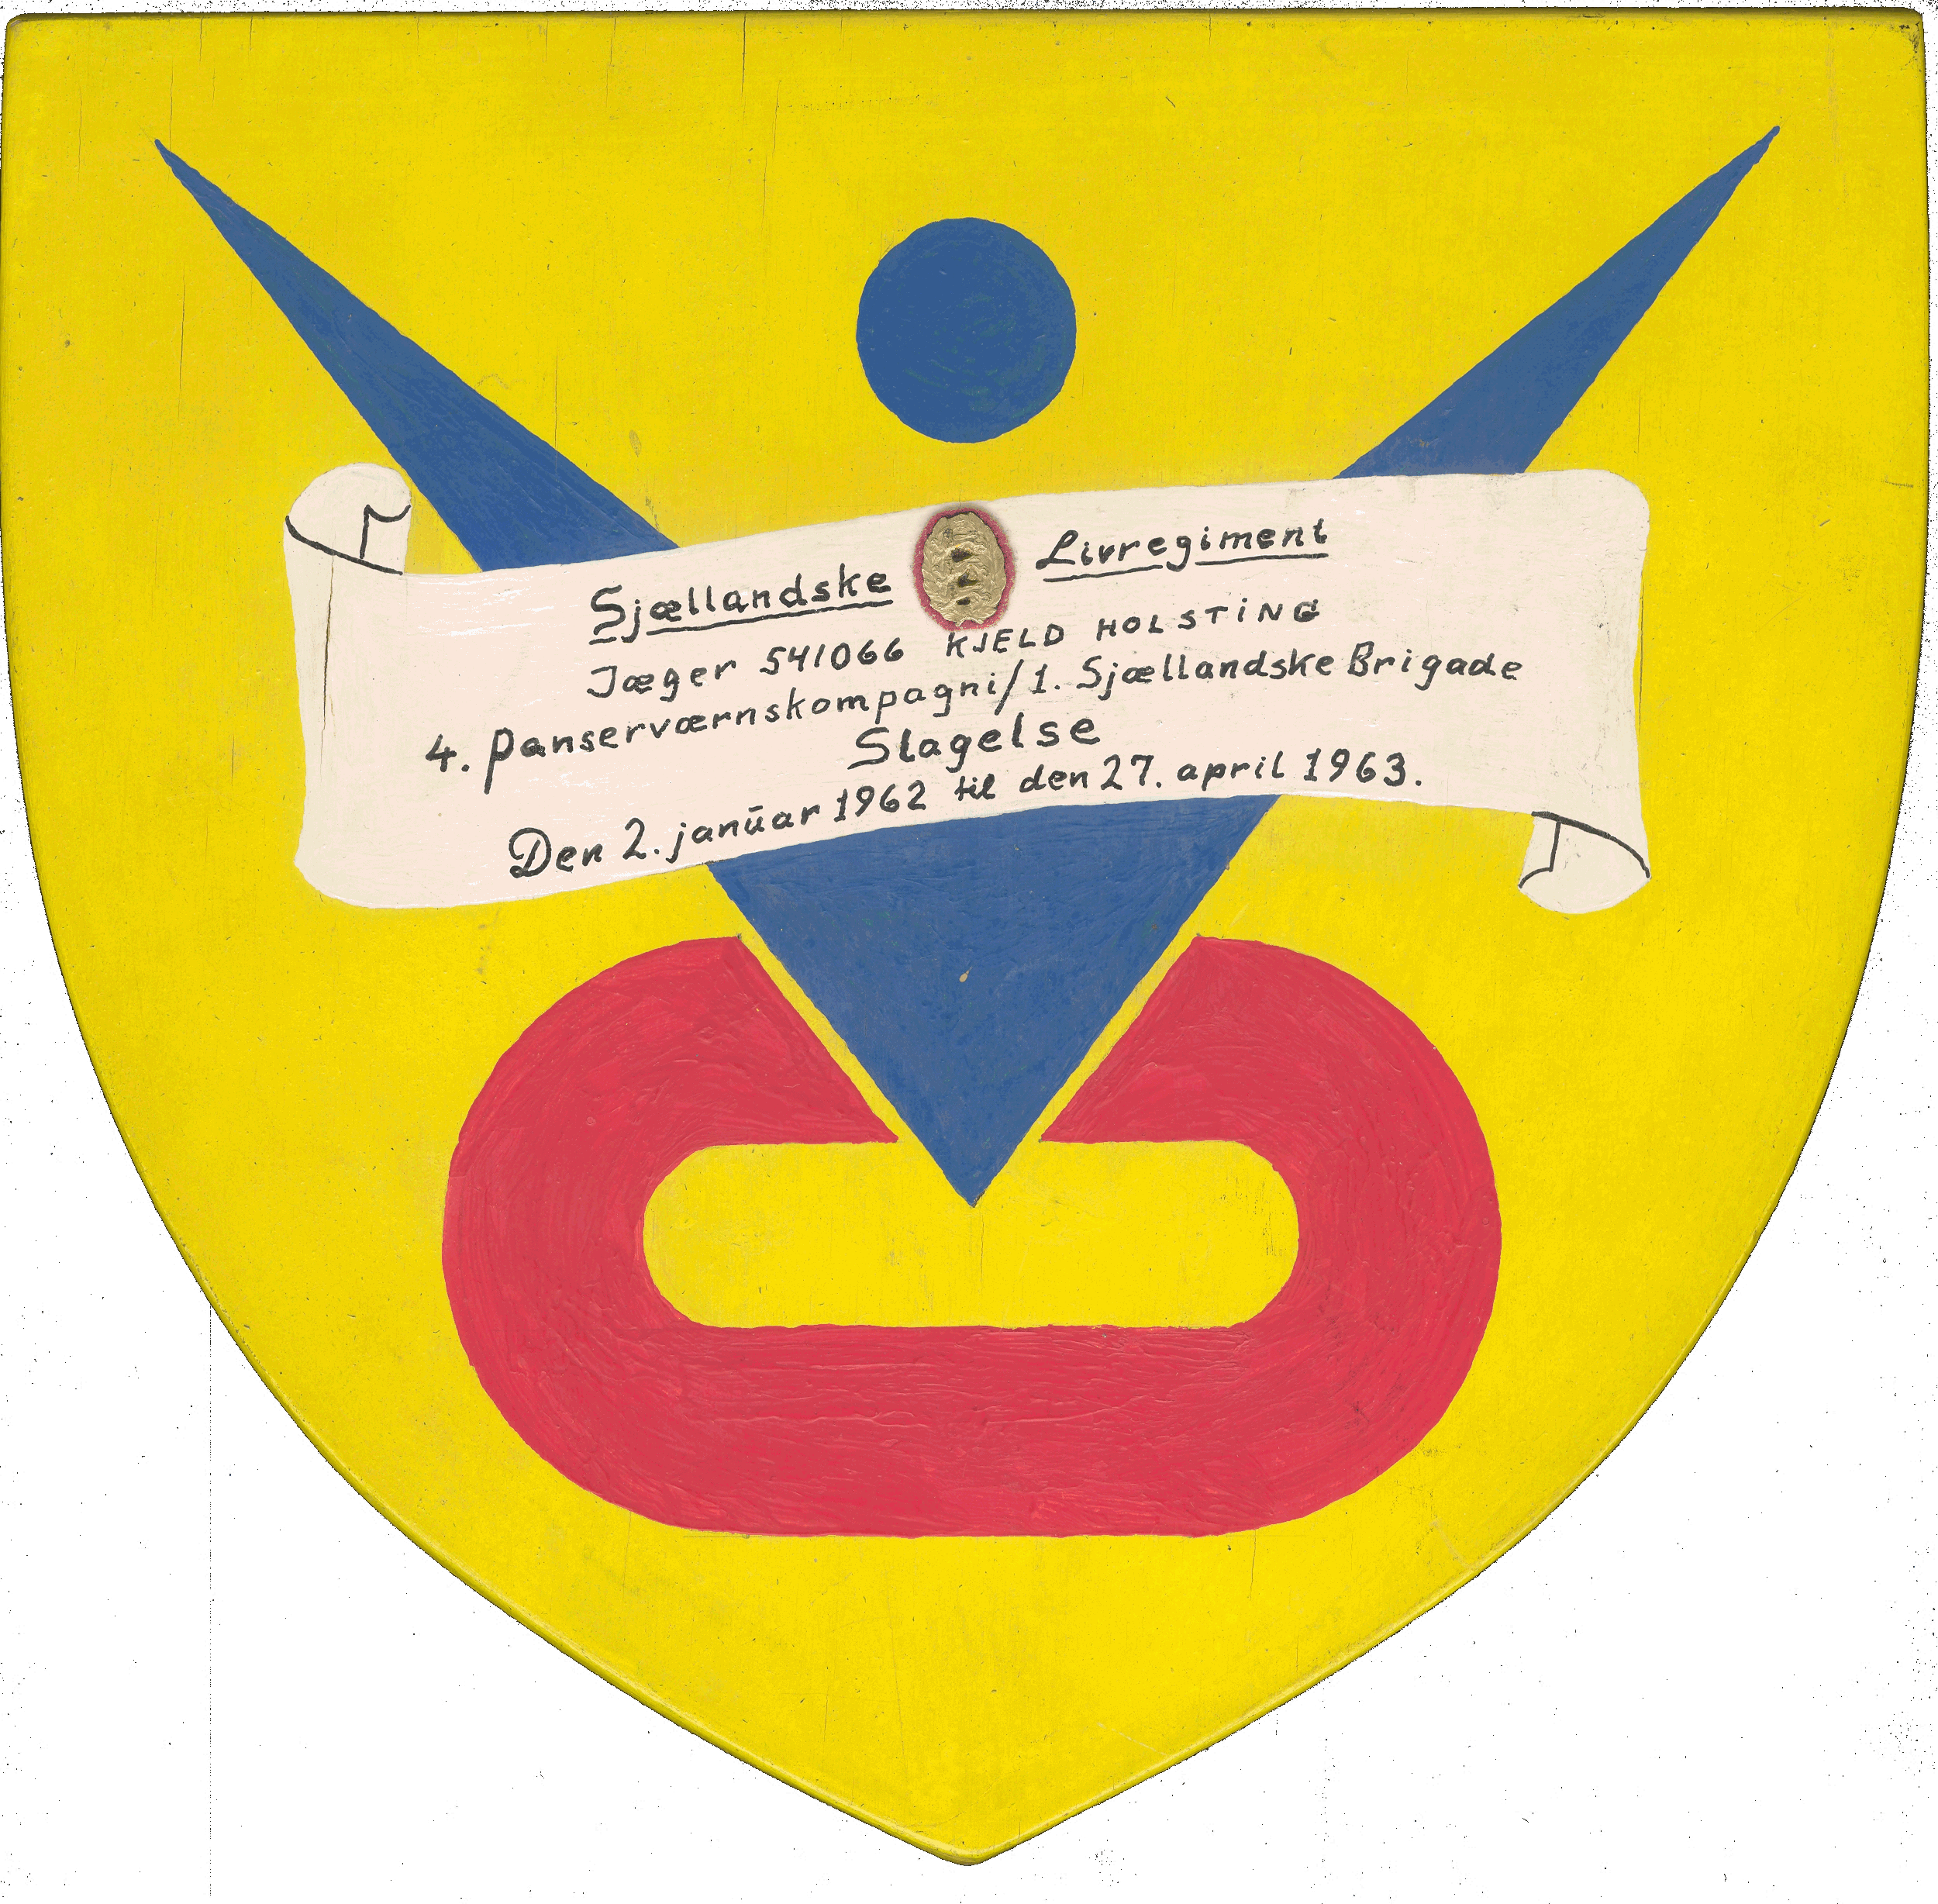 Værnepligtig Panserjæger, Sjællandske Livregiment 1962-63